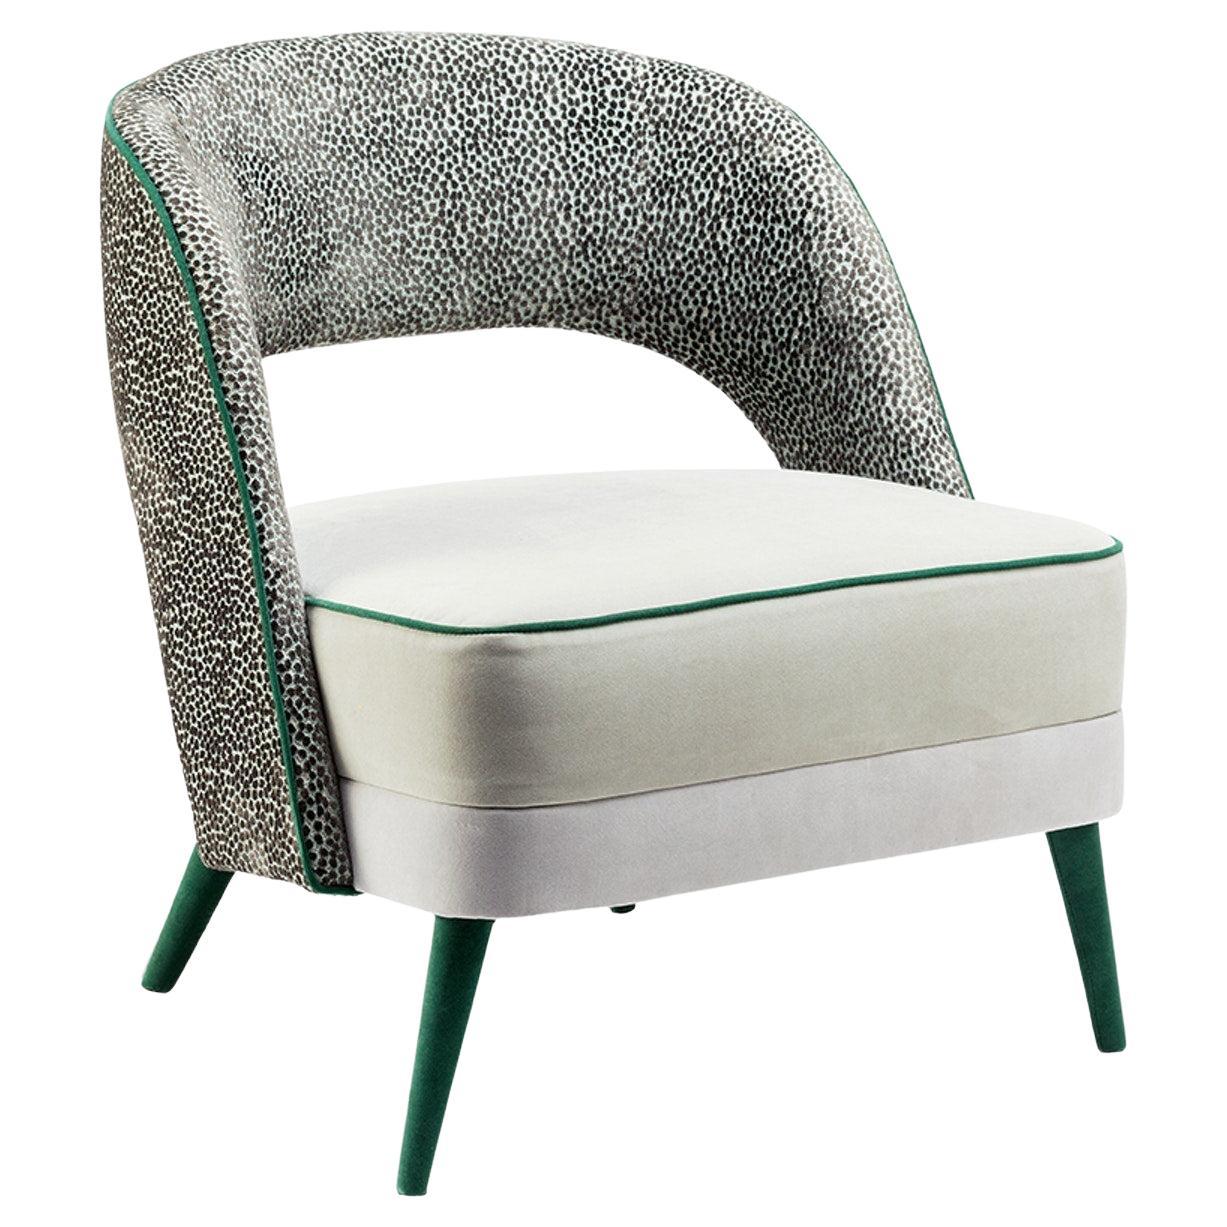 Sessel mit Polsterfüßen, Sitz aus weichem, beigefarbenem Stoff und Rückenlehne aus strukturiertem Stoff